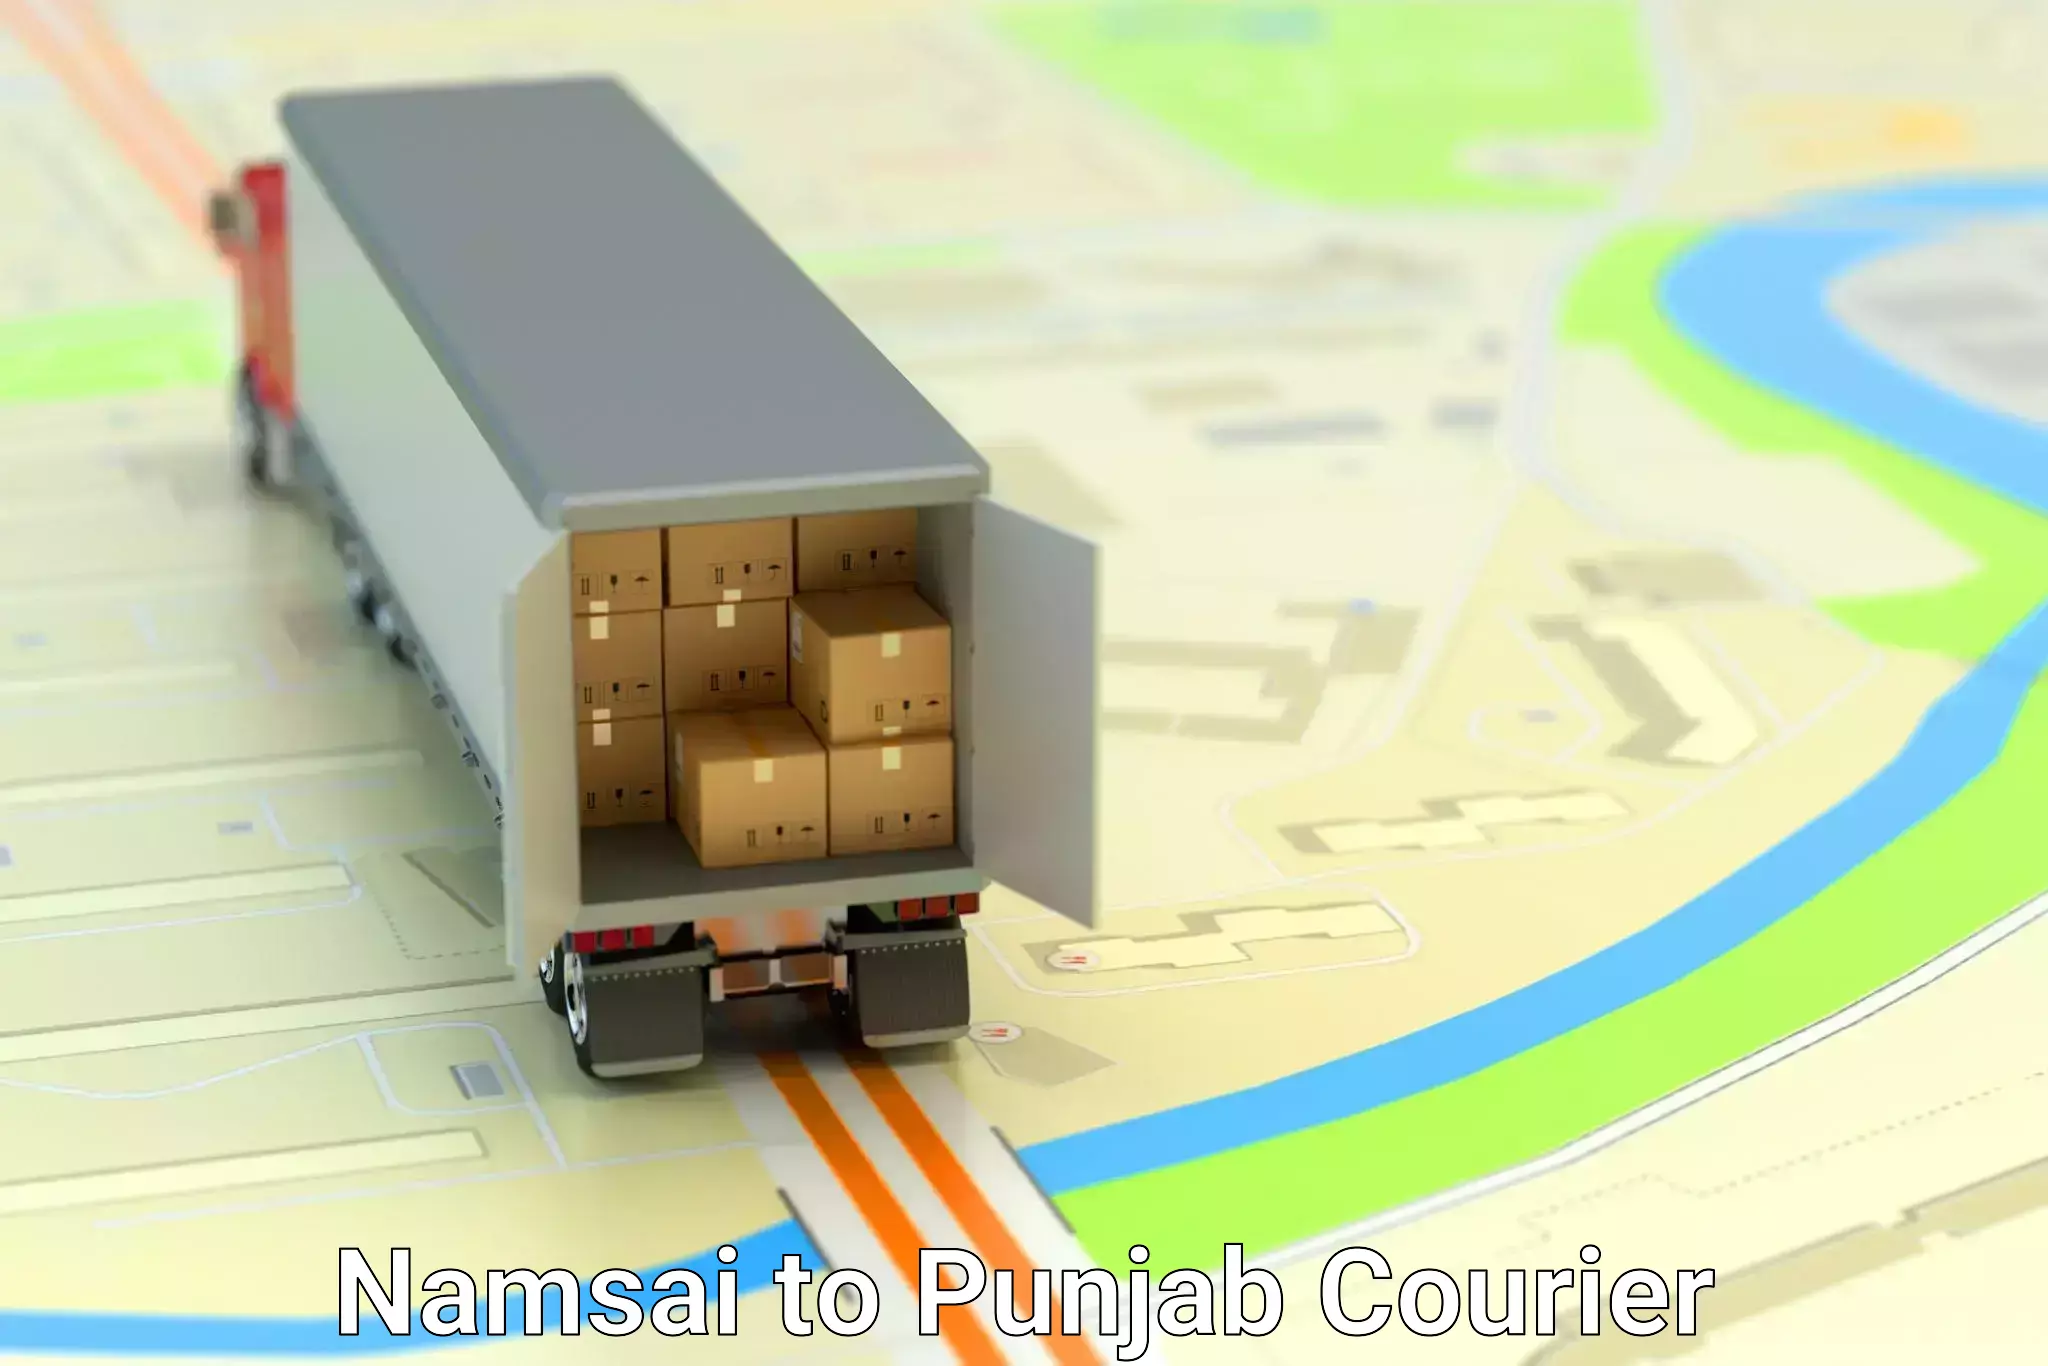 Enhanced tracking features Namsai to Punjab